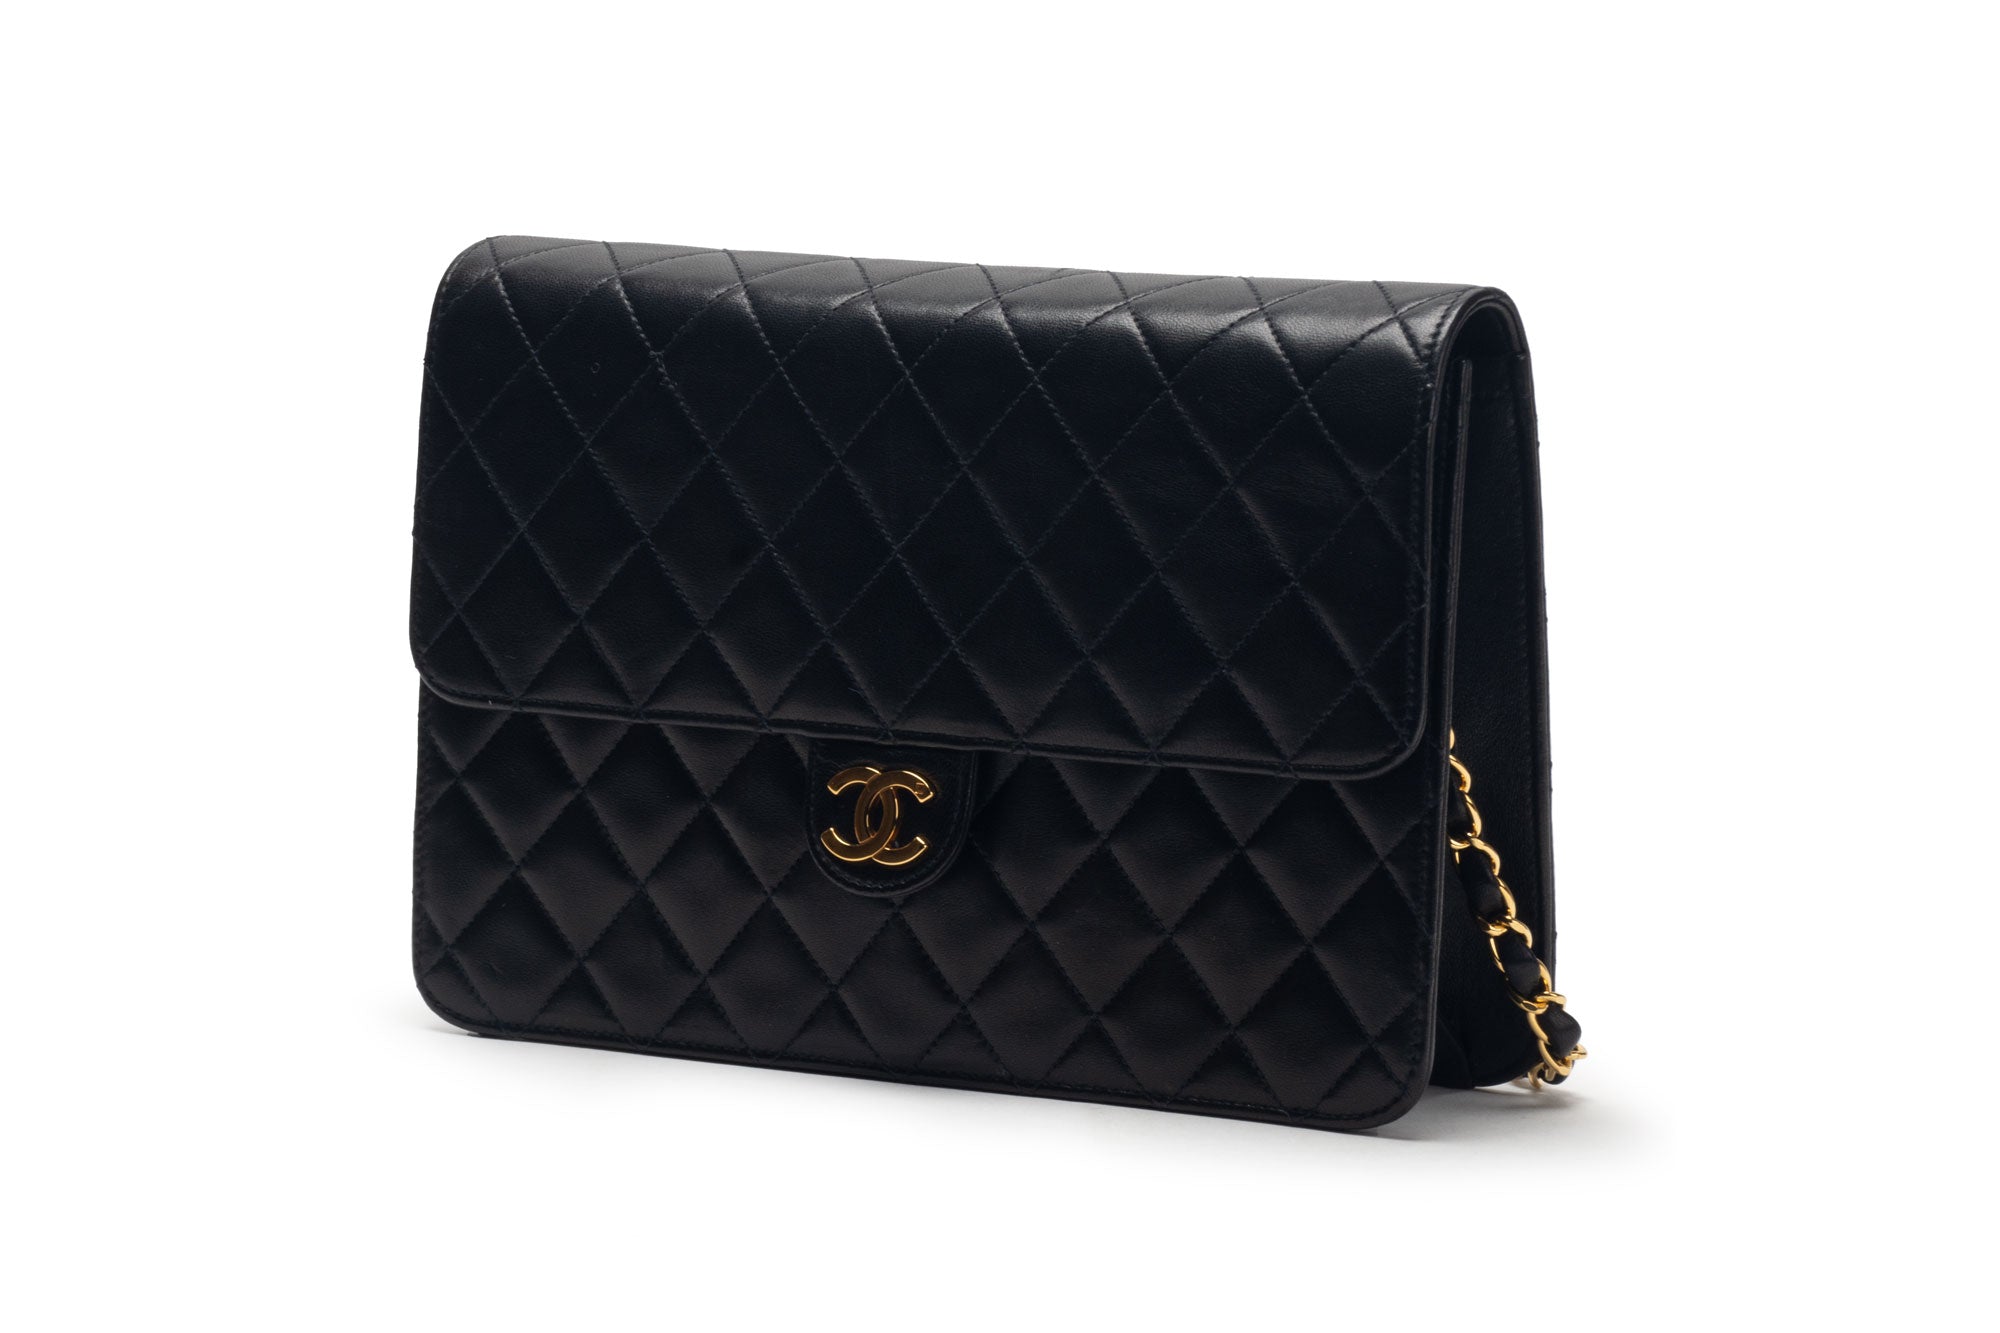 Chanel Single Flap Bag – Handbag Social Club